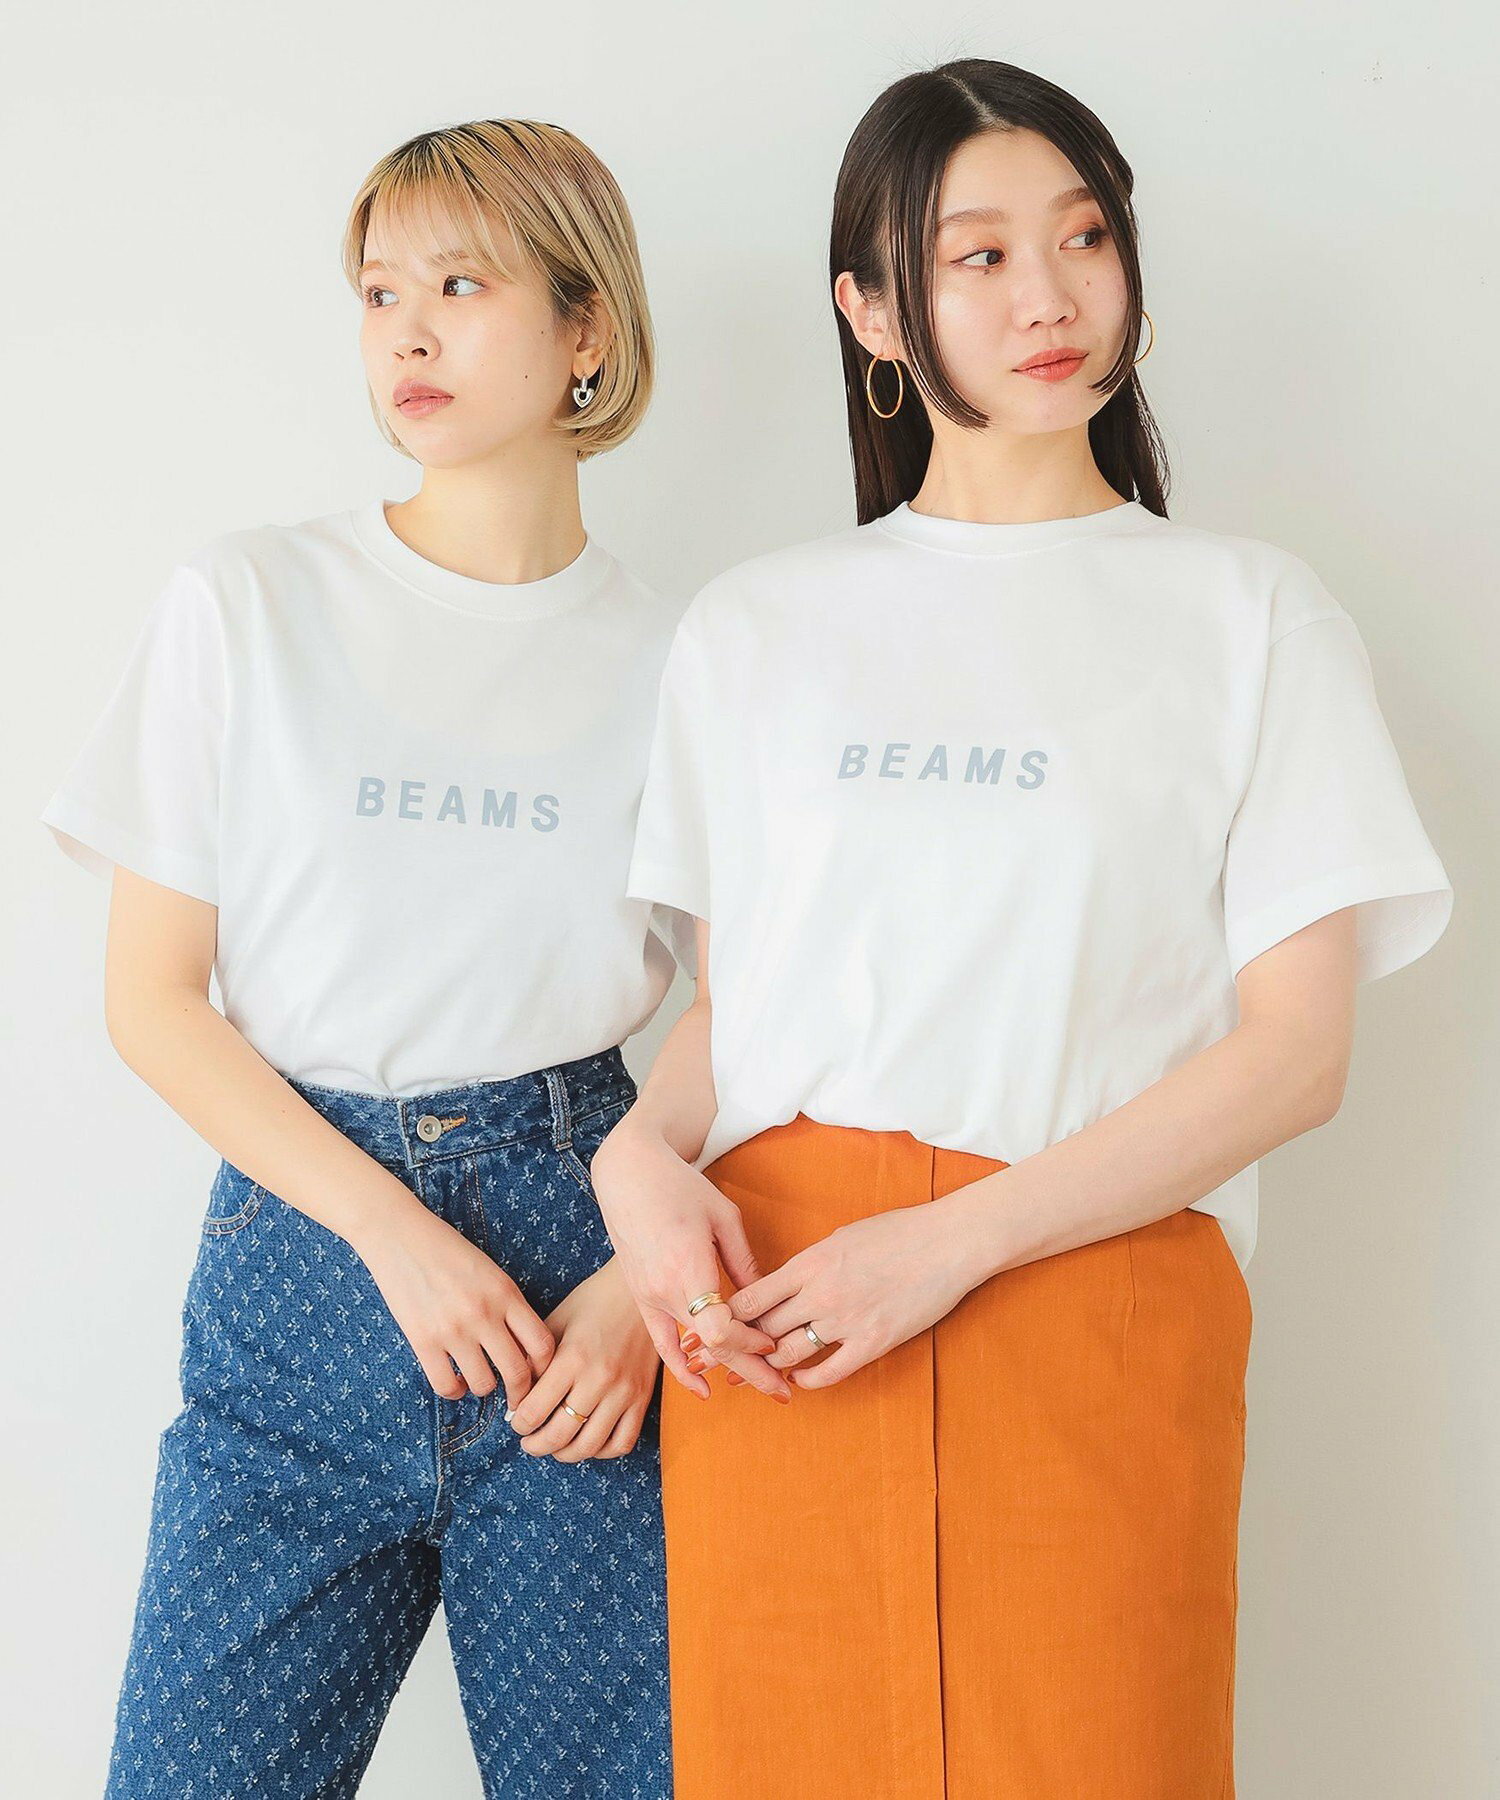 BEAMS / ロゴ Tシャツ 24SS